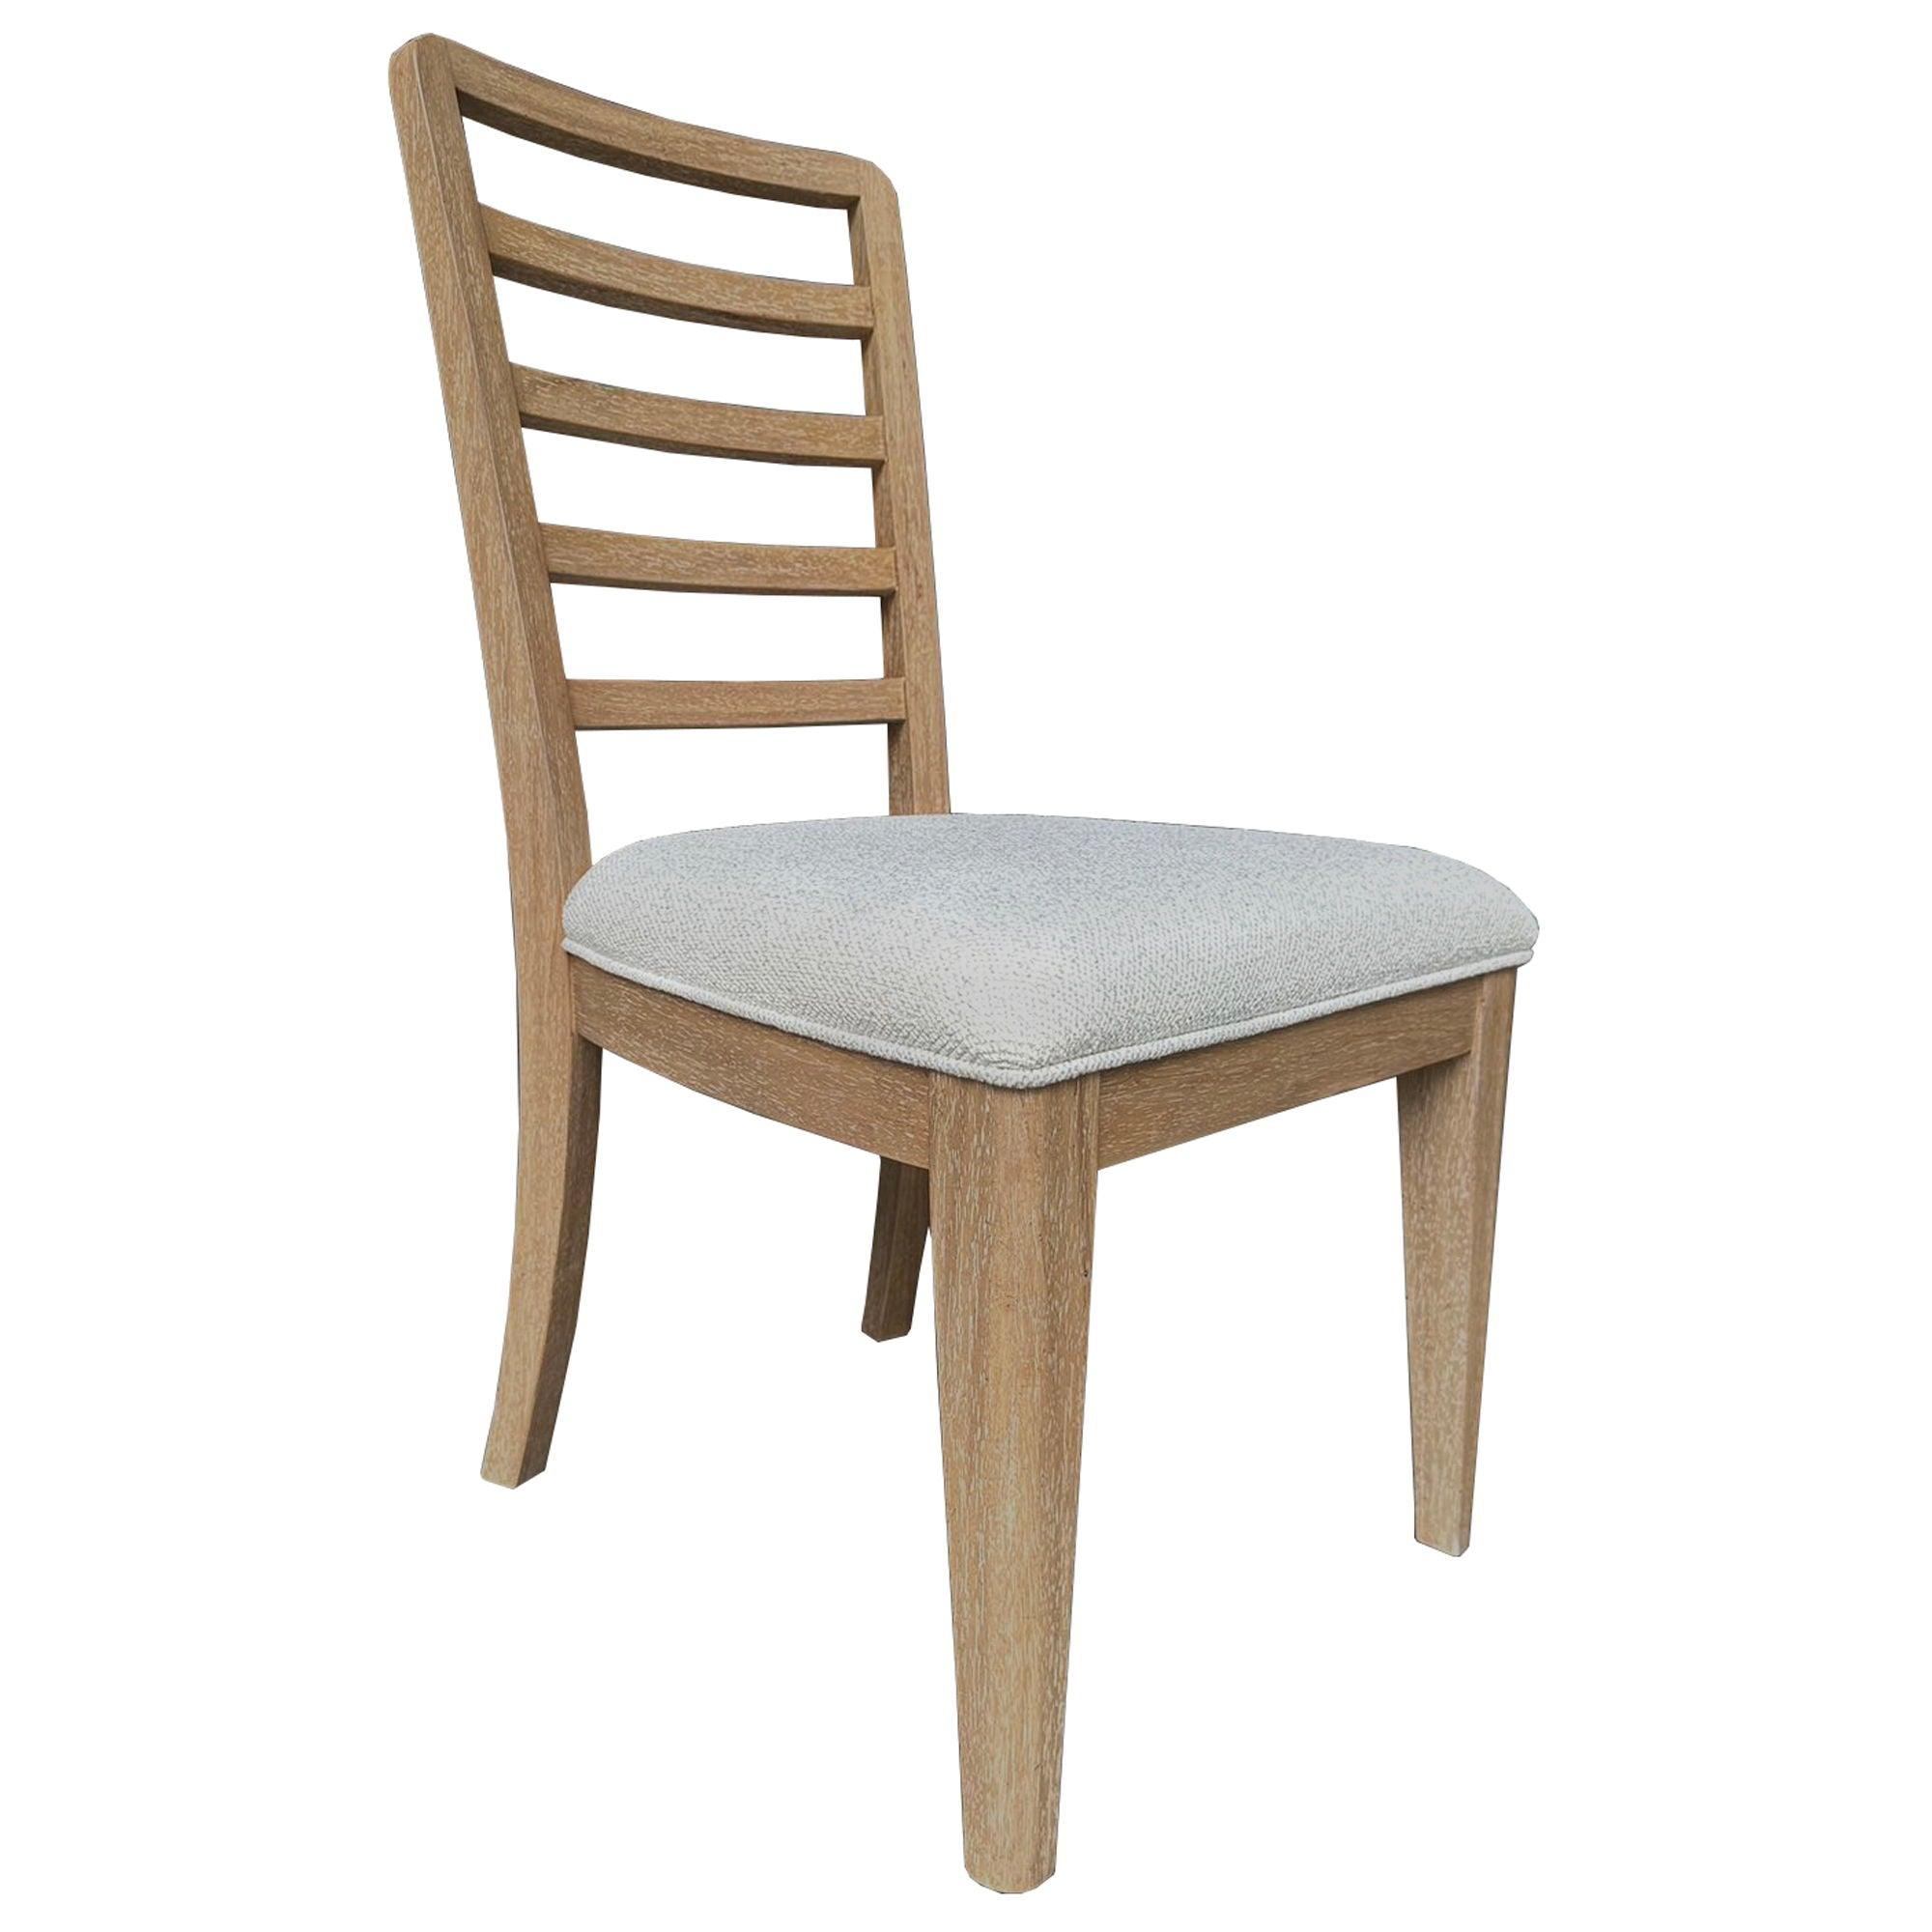 Parker House Furniture - Escape - Dining Ladder Back Dining Chair (Set of 2) - Glazed Natural Oak Mirage Mist - 5th Avenue Furniture